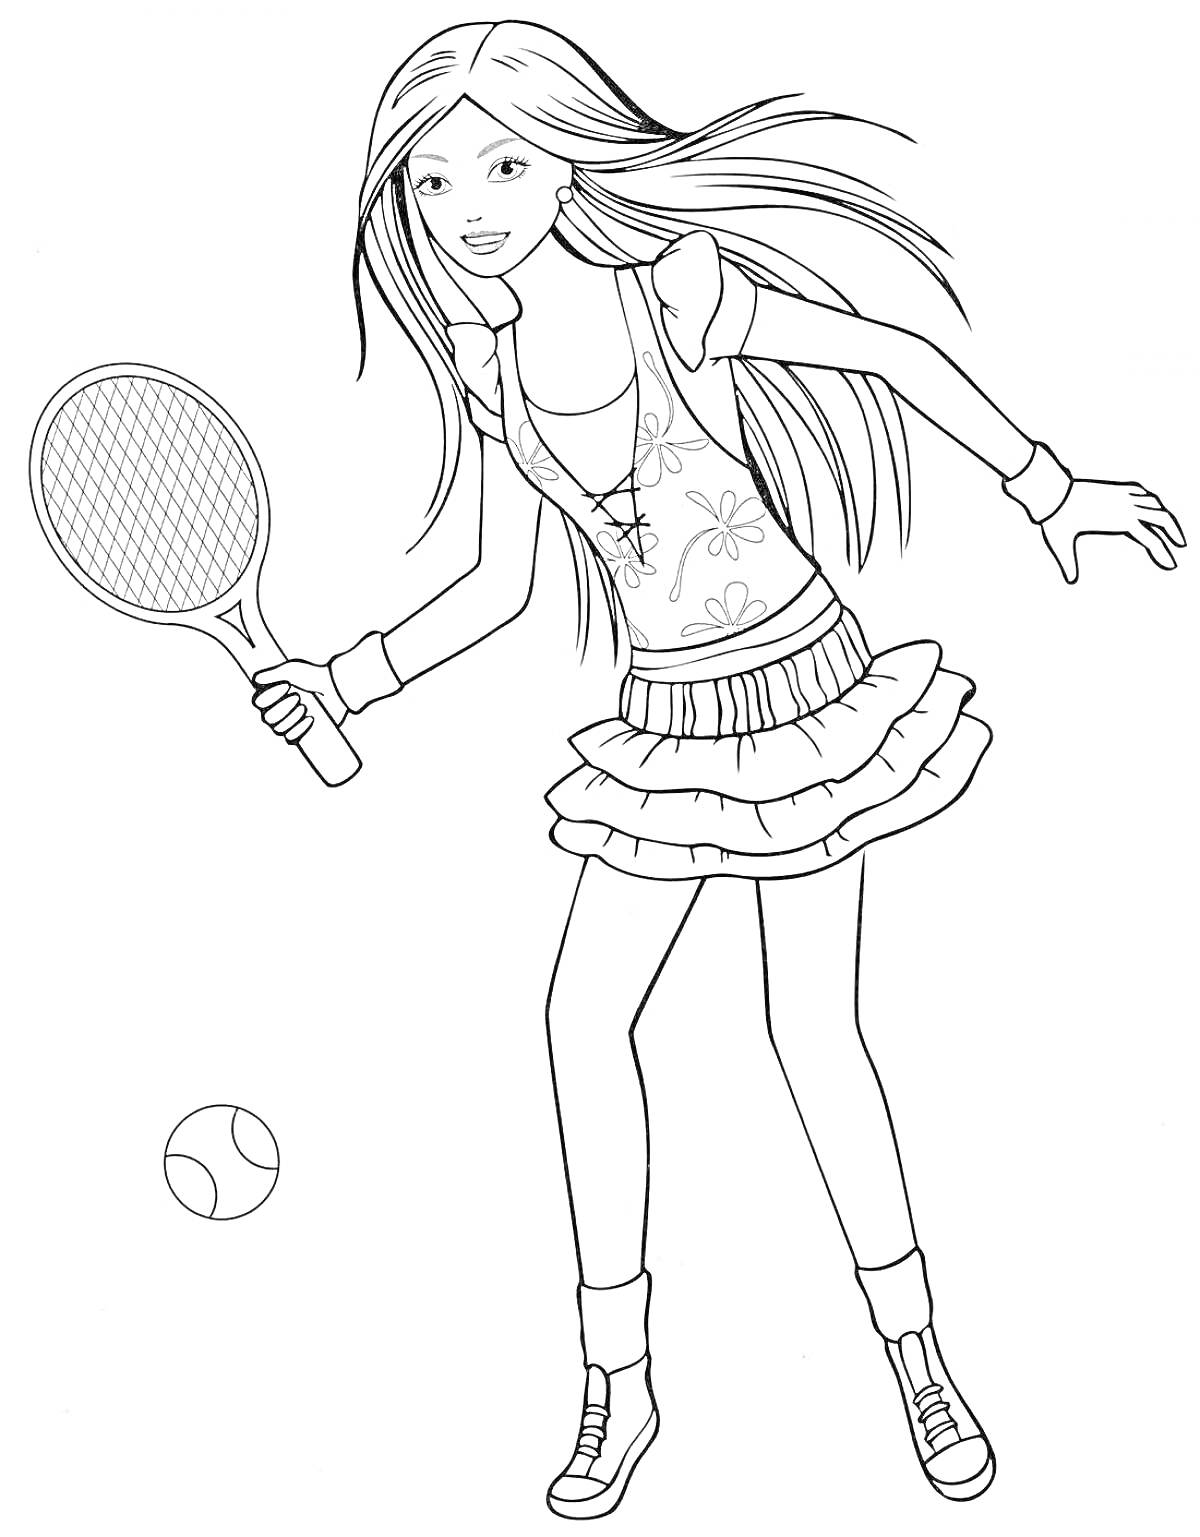 Раскраска Девушка с длинными волосами, играющая в теннис, с ракеткой и мячом.